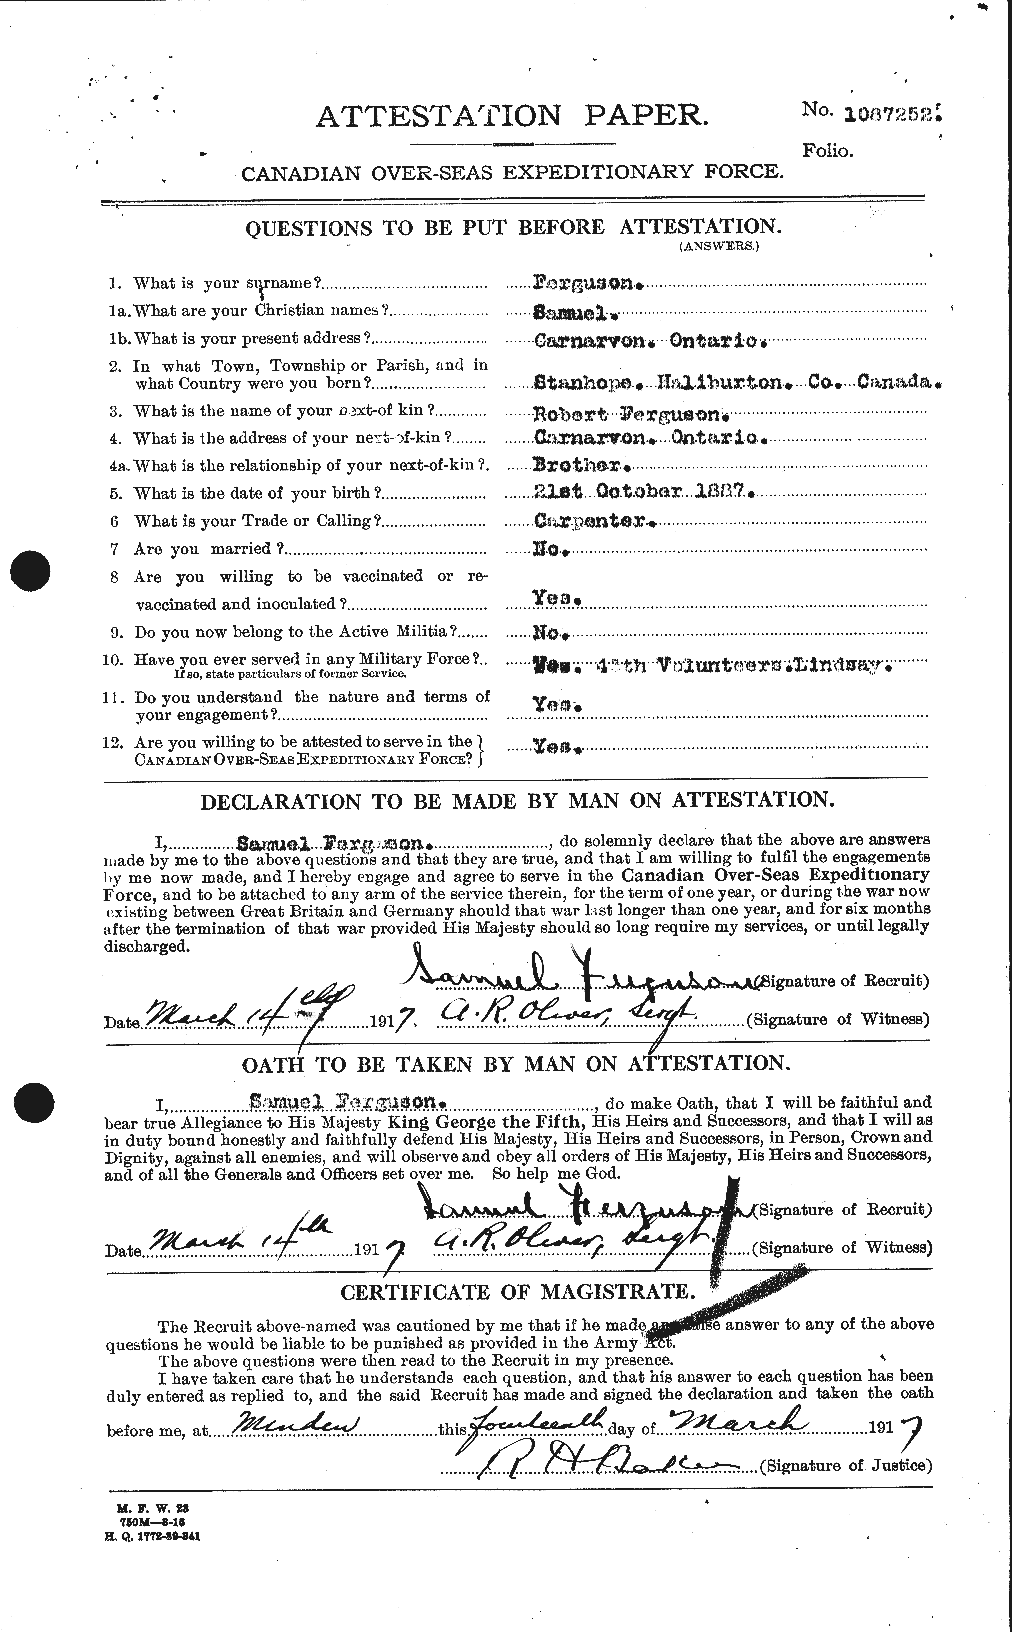 Dossiers du Personnel de la Première Guerre mondiale - CEC 321652a